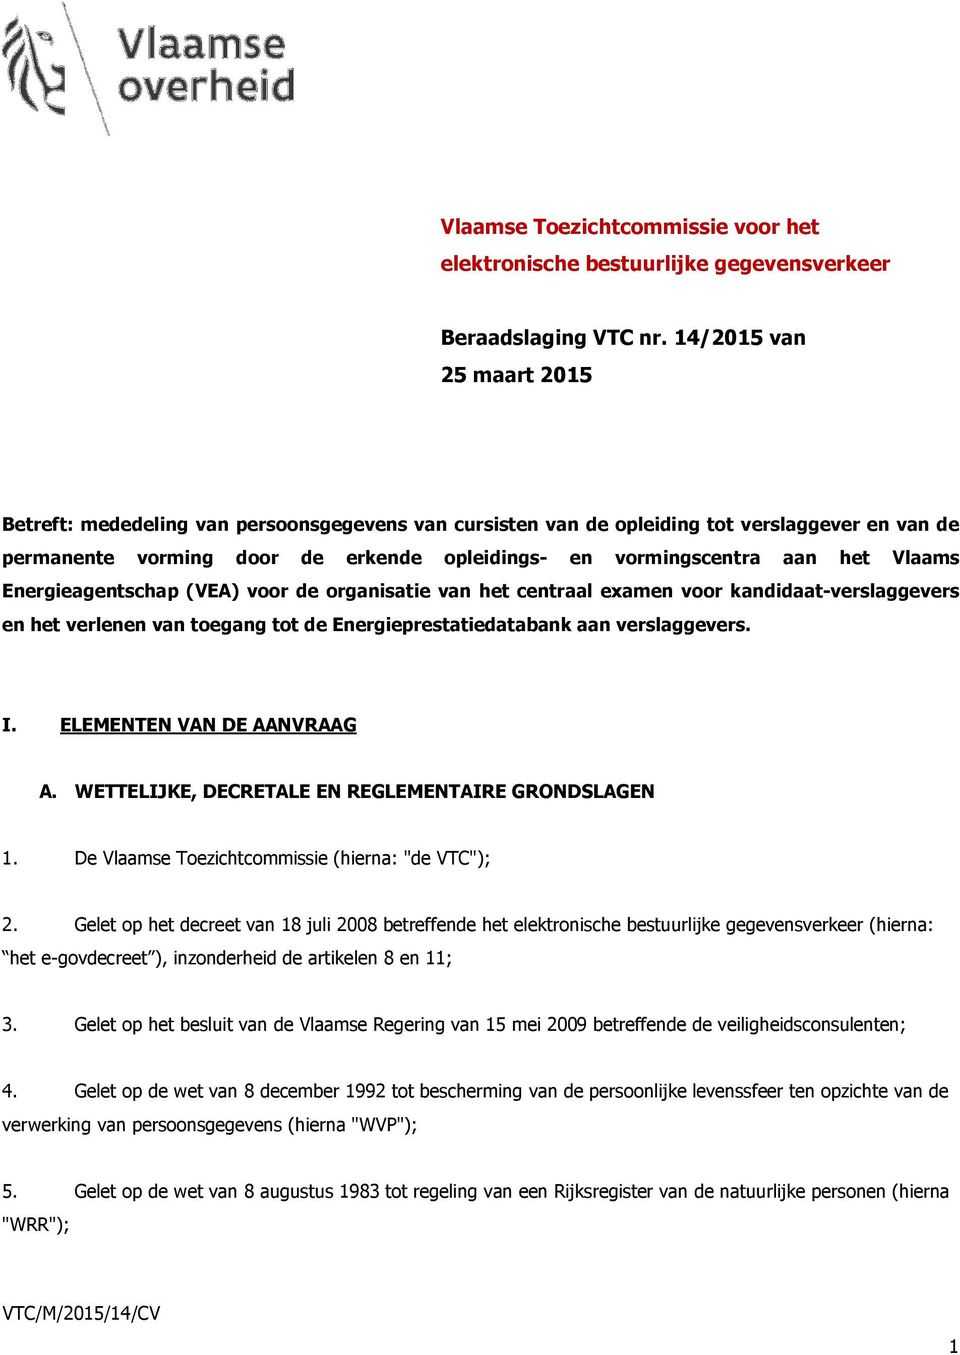 Vlaams Energieagentschap (VEA) voor de organisatie van het centraal examen voor kandidaat-verslaggevers en het verlenen van toegang tot de Energieprestatiedatabank aan verslaggevers. I.